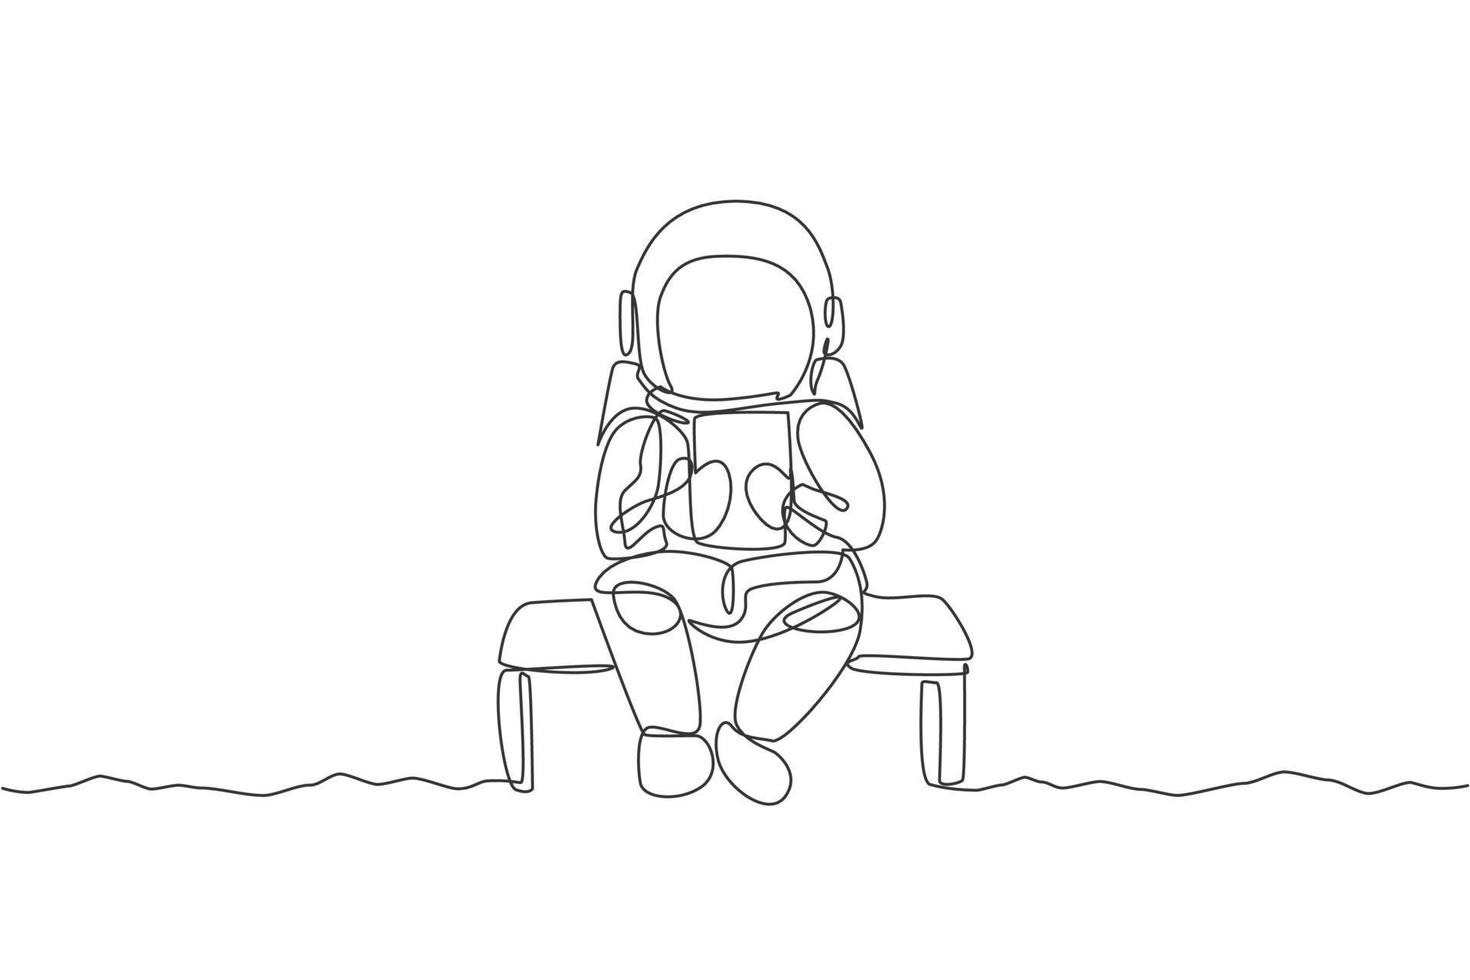 enkele doorlopende lijntekening van astronaut die zich op stoel ontspant tijdens het lezen van nieuws in tablettelefoon. zakelijk kantoor met galaxy outer space concept. trendy één lijn tekenen ontwerp vectorillustratie vector